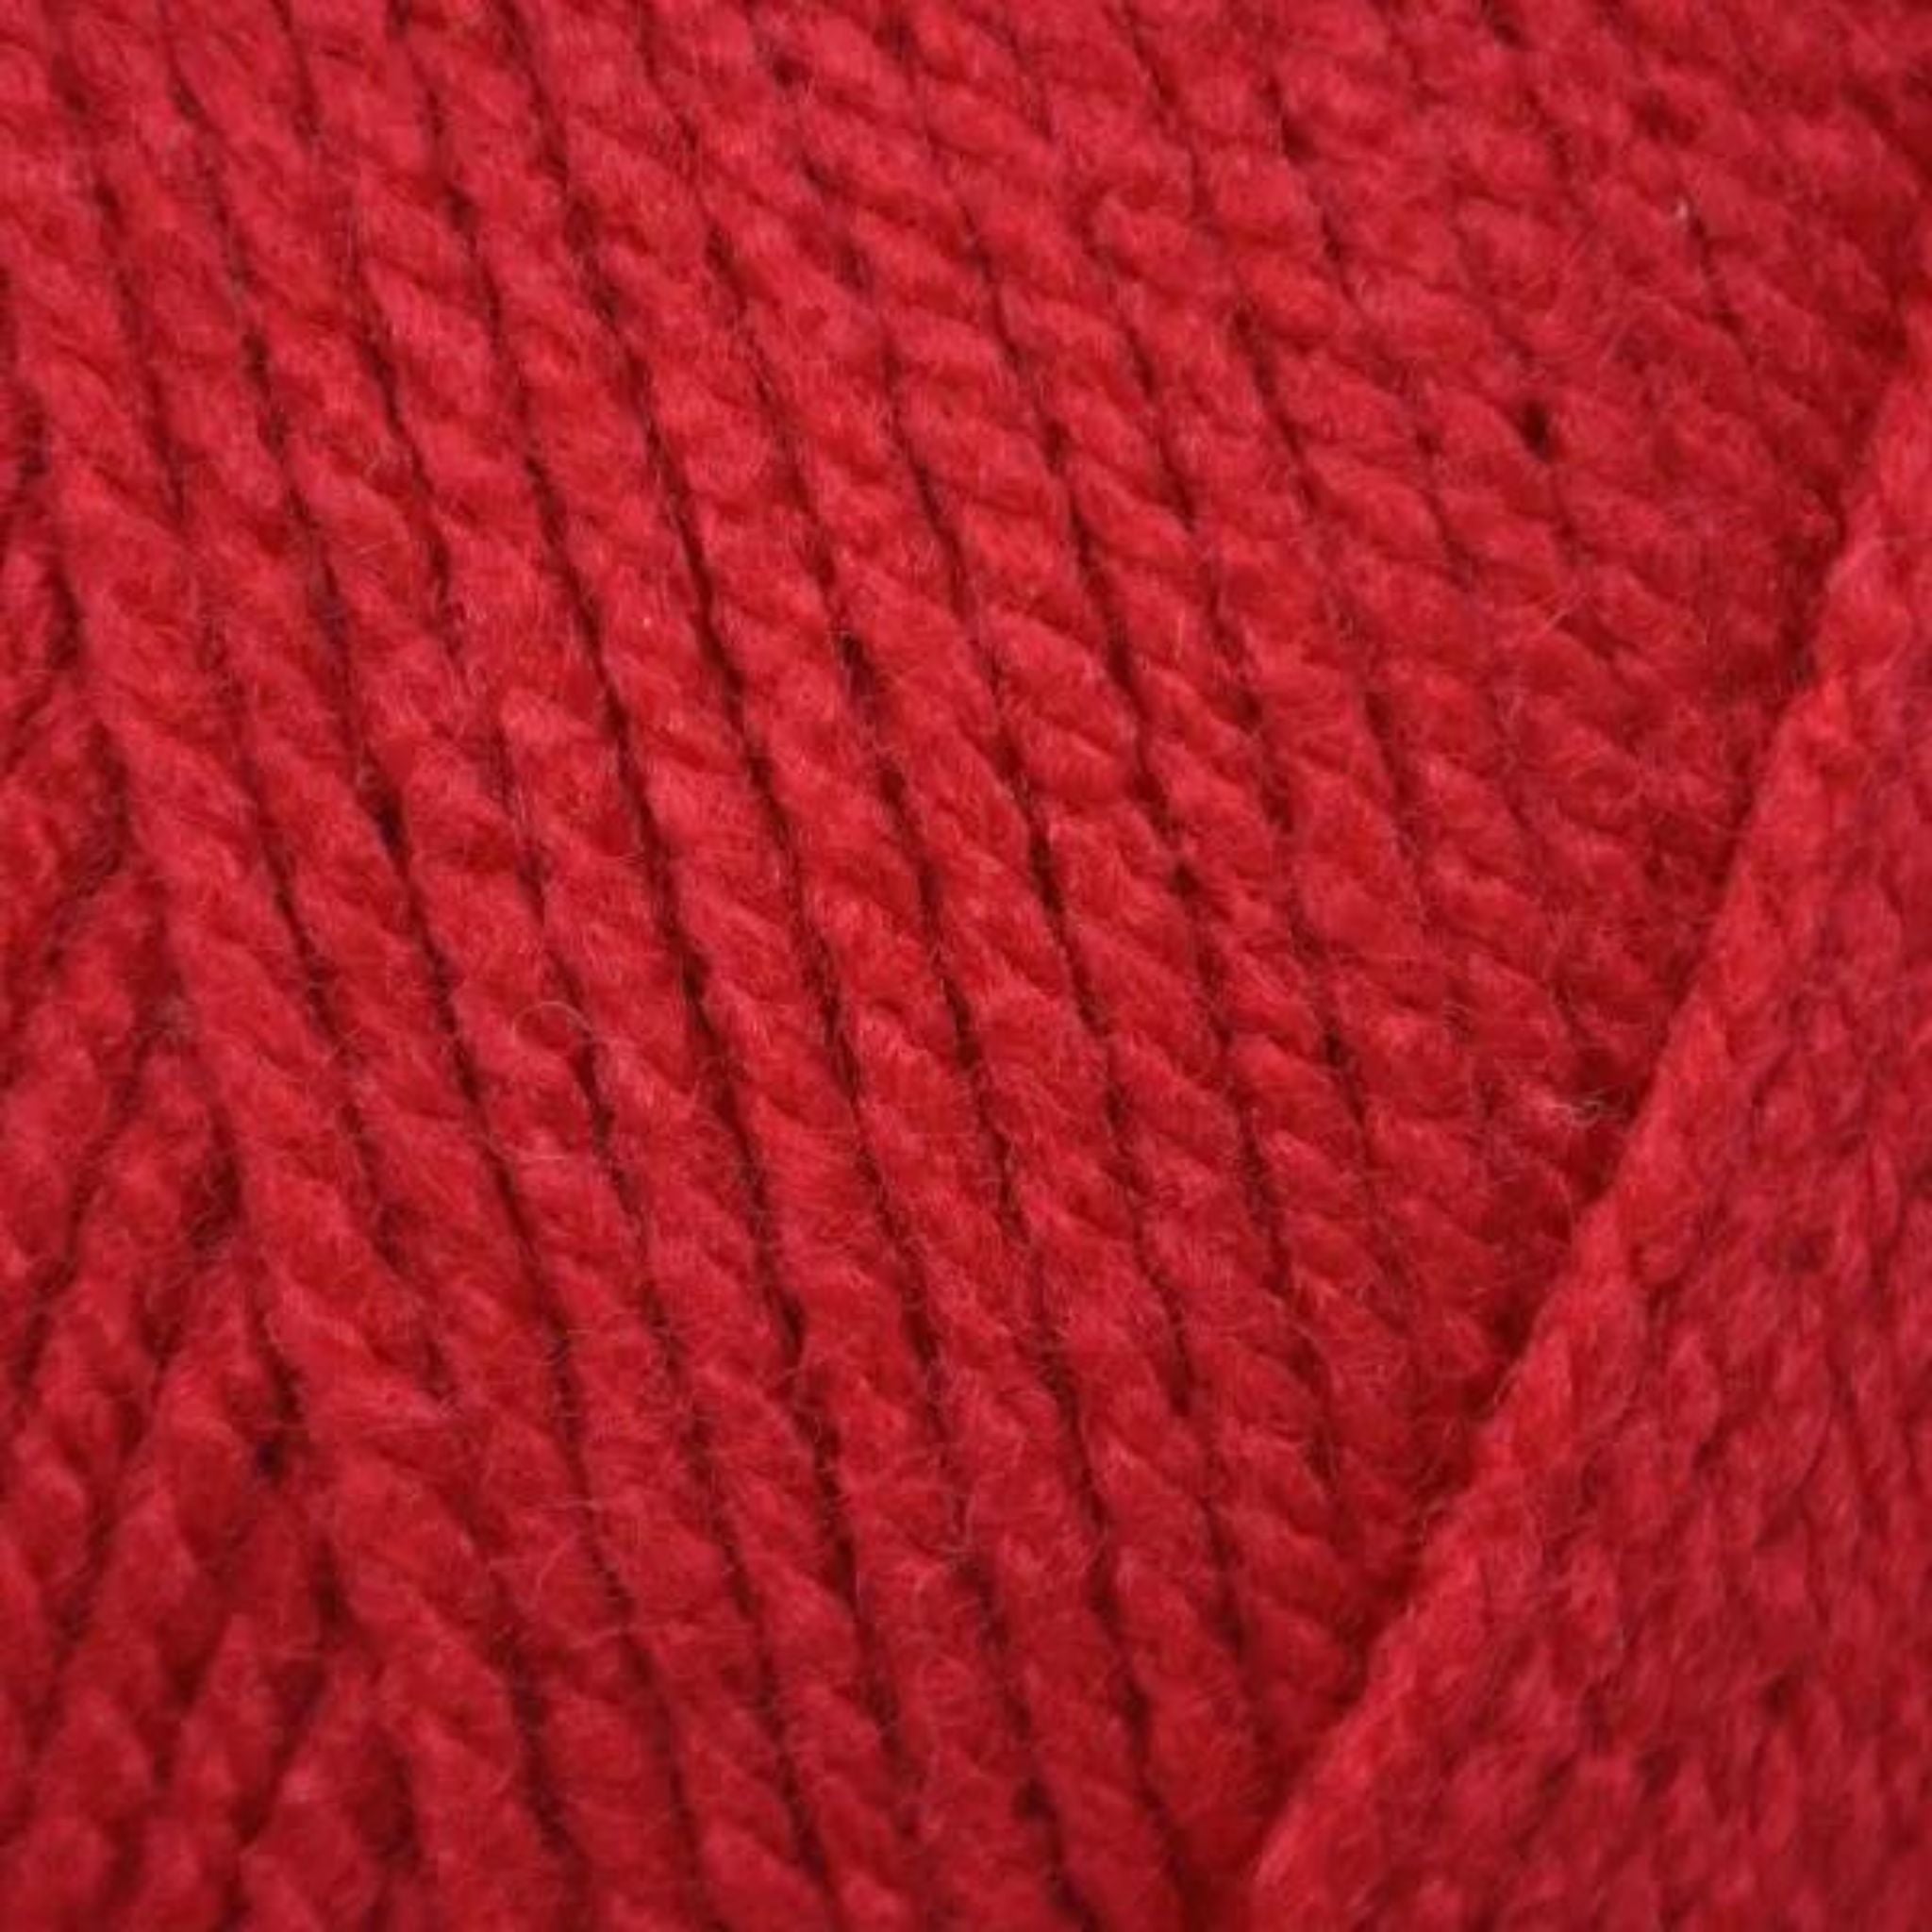 Ruby red acrylic aran wool 100g balls - Emu Yarns